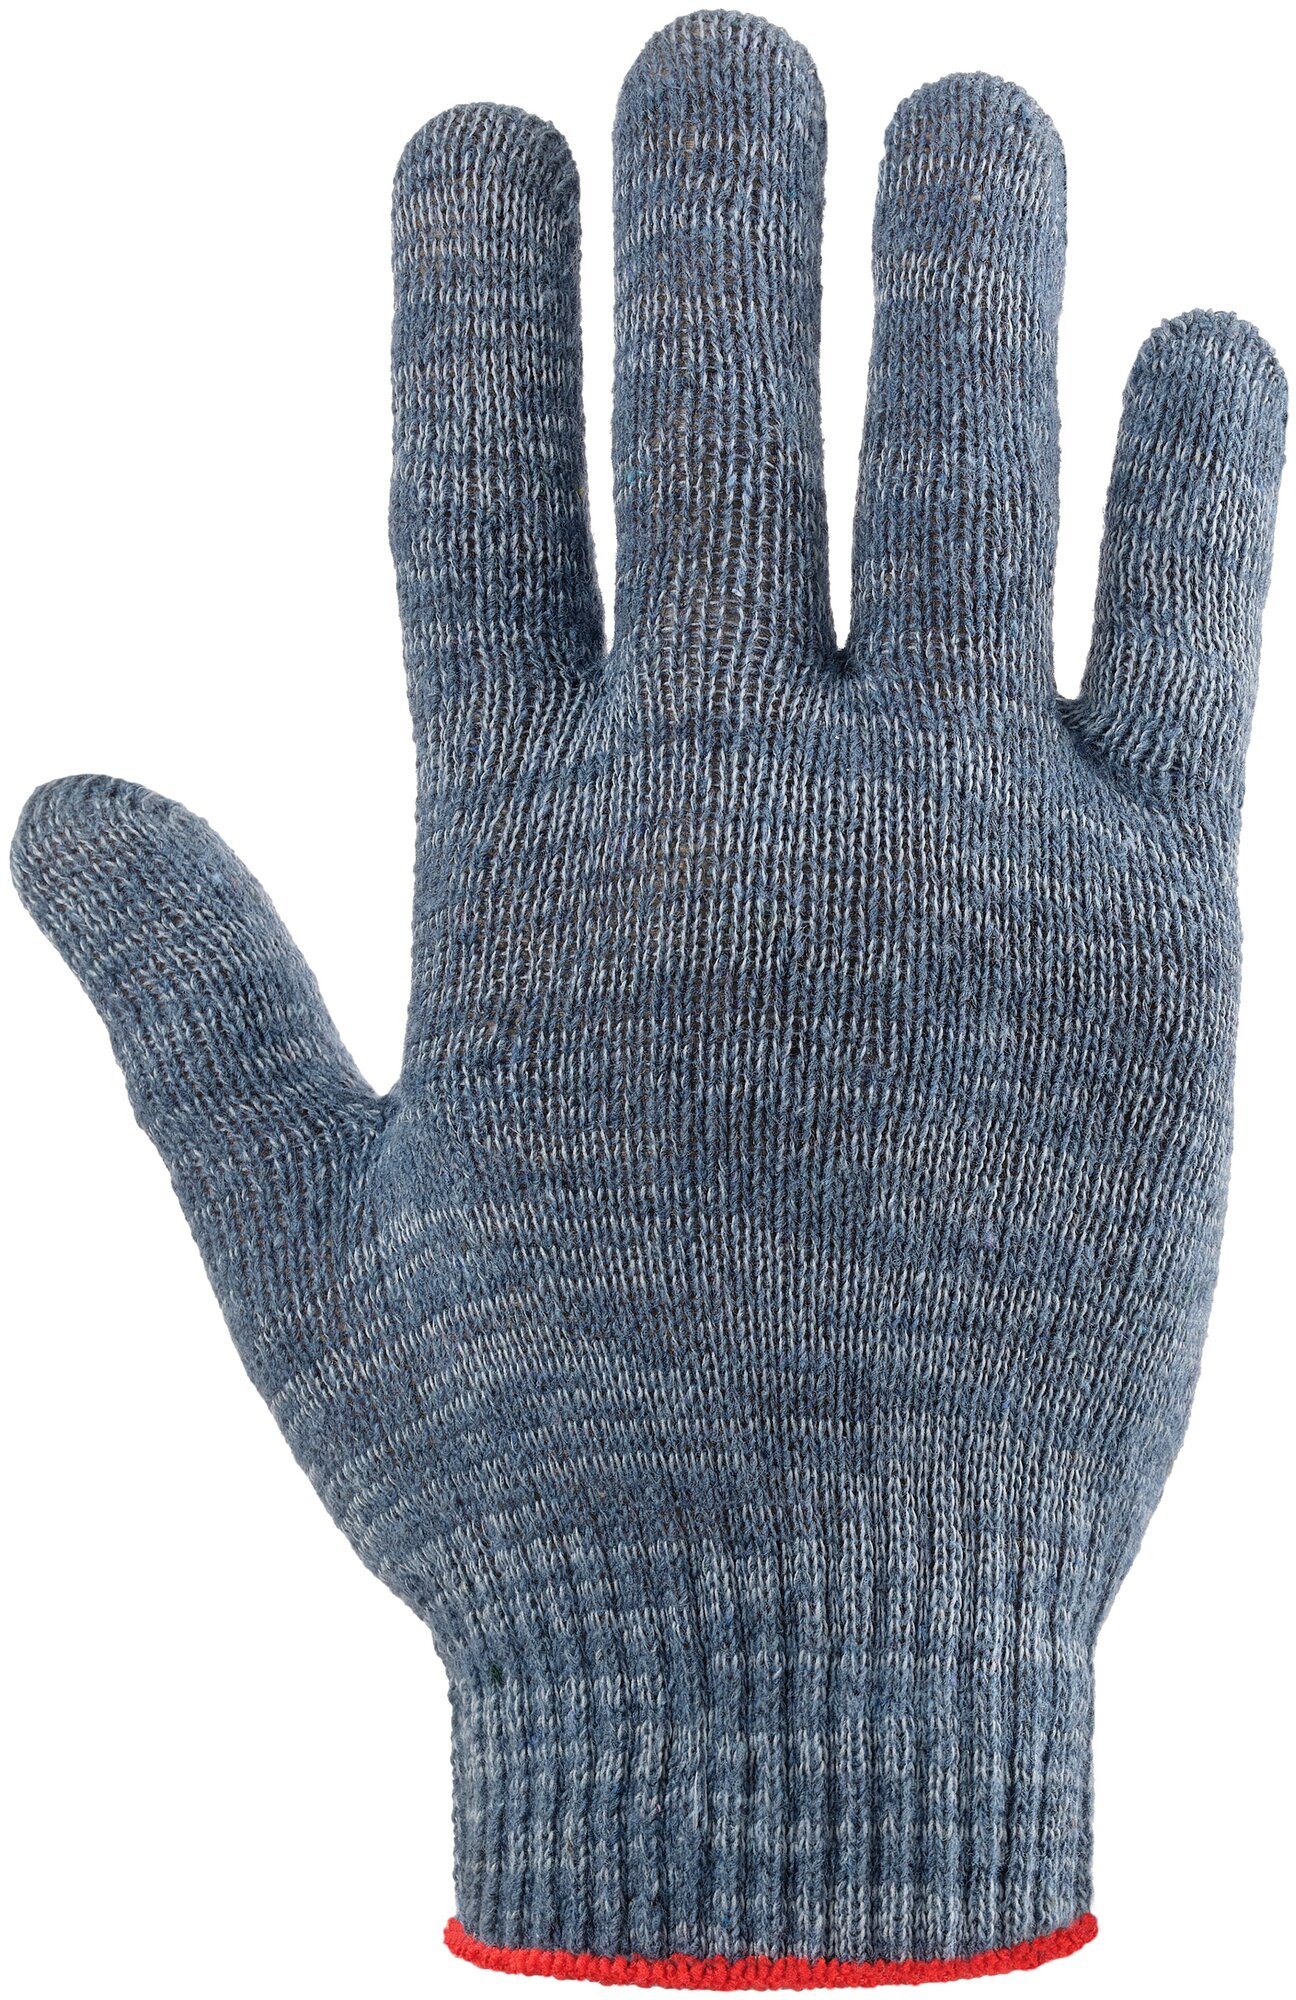 Трикотажные перчатки Фабрика перчаток, средние, с ПВХ, 10 класс, 4 нити, серые, р.М 4-10-СР-СЕР-(M) - фотография № 6